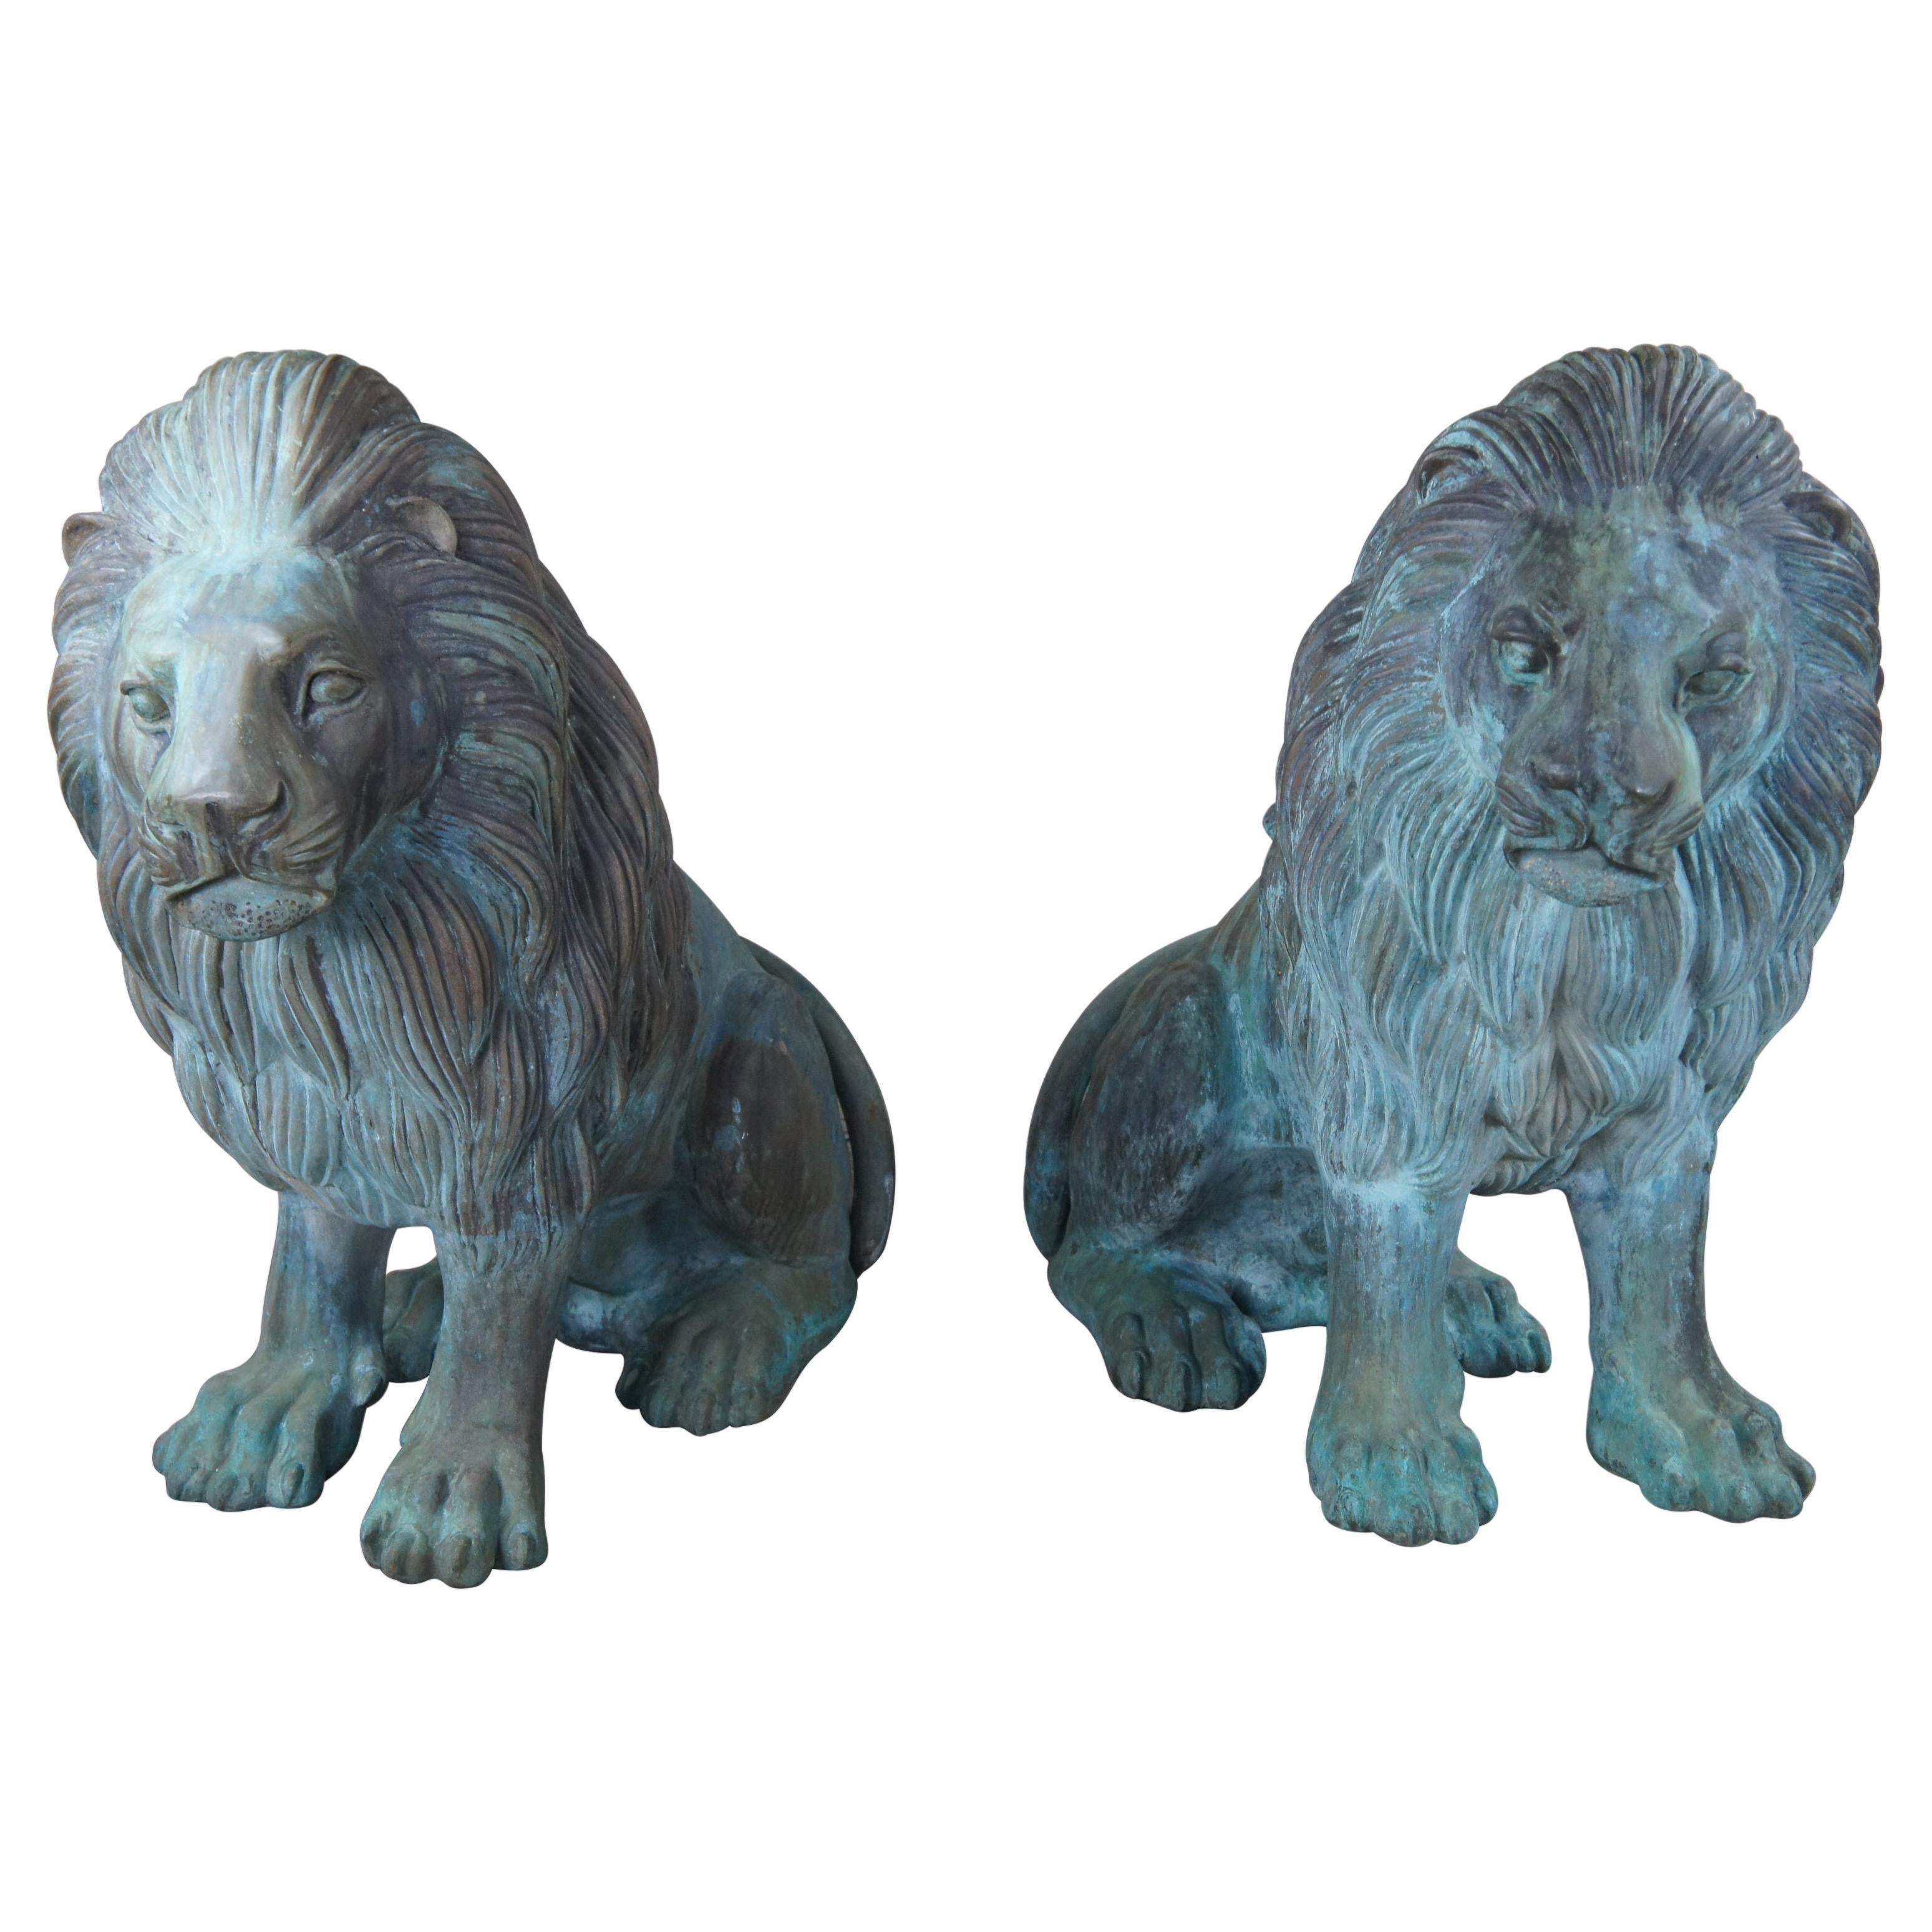 2 Monumental Cast Bronze Verdigris Outdoor Lion Statues Entry Guardians Pair 44"